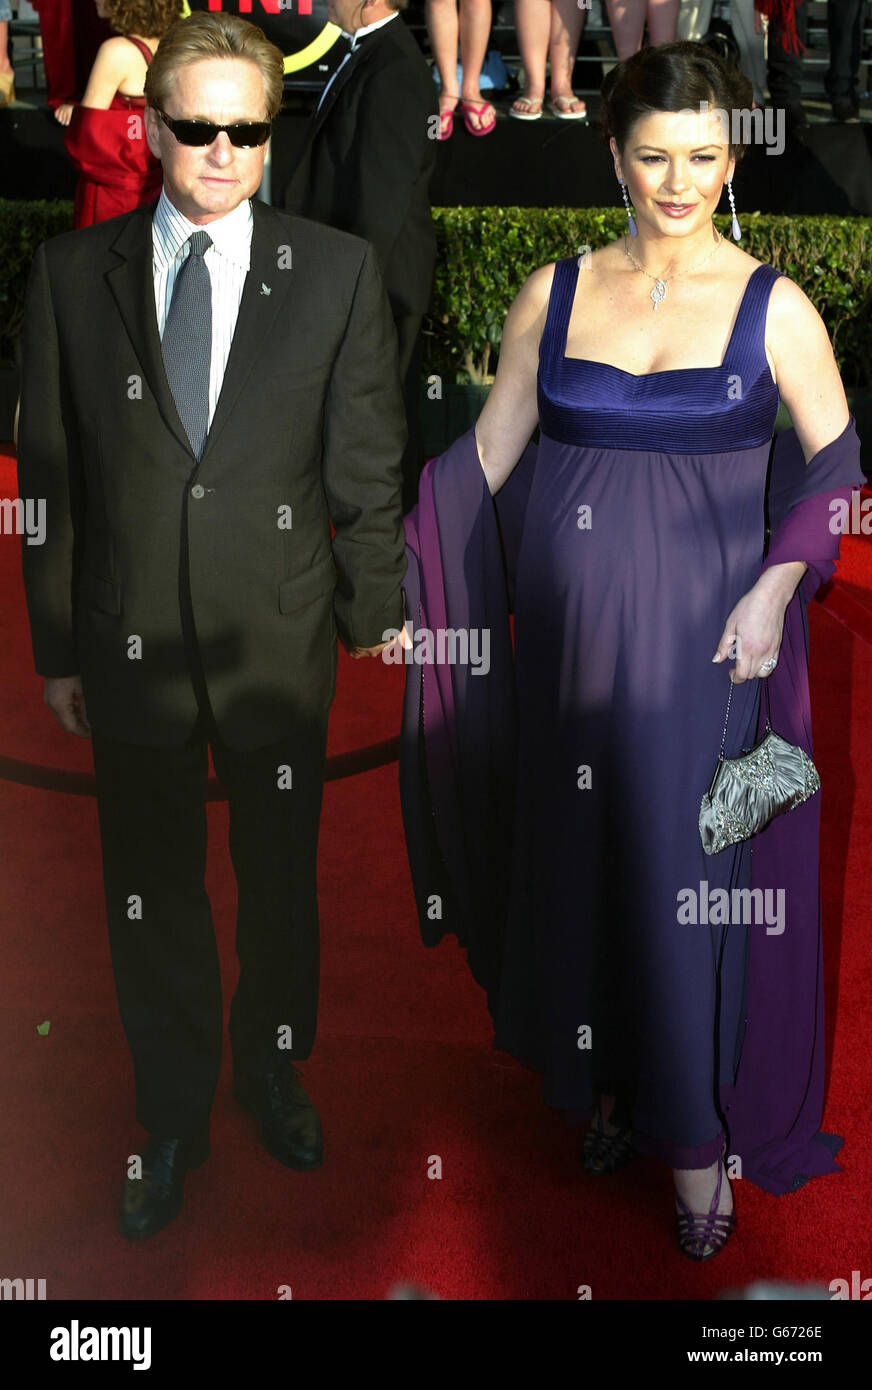 Les acteurs Michael Douglas et Catherine Zeta-Jones arrivent sur le tapis rouge pour la 9e édition annuelle des Screen Actors Guild Awards au Shrine Auditorium de Los Angeles. Banque D'Images